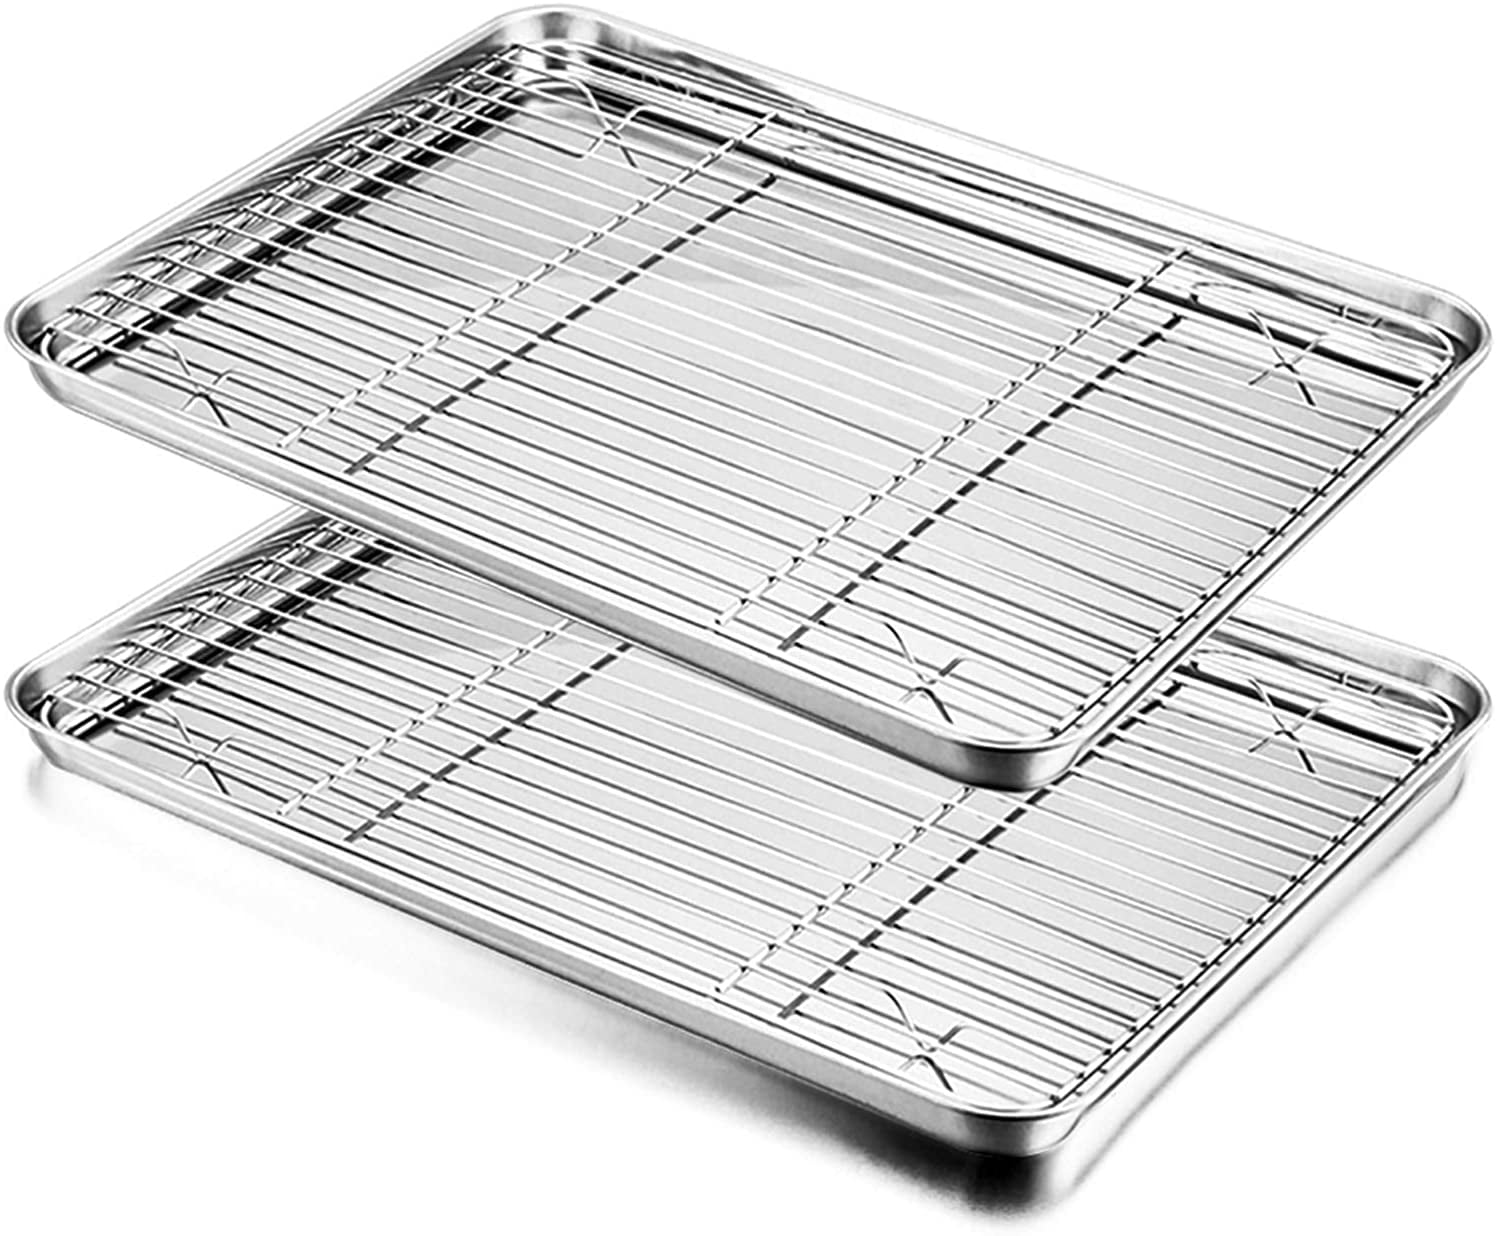 Stainless Steel Cookies Sheet Baking Pans-Cooling Roasting Rack 4 Pcs 16x12x1" 